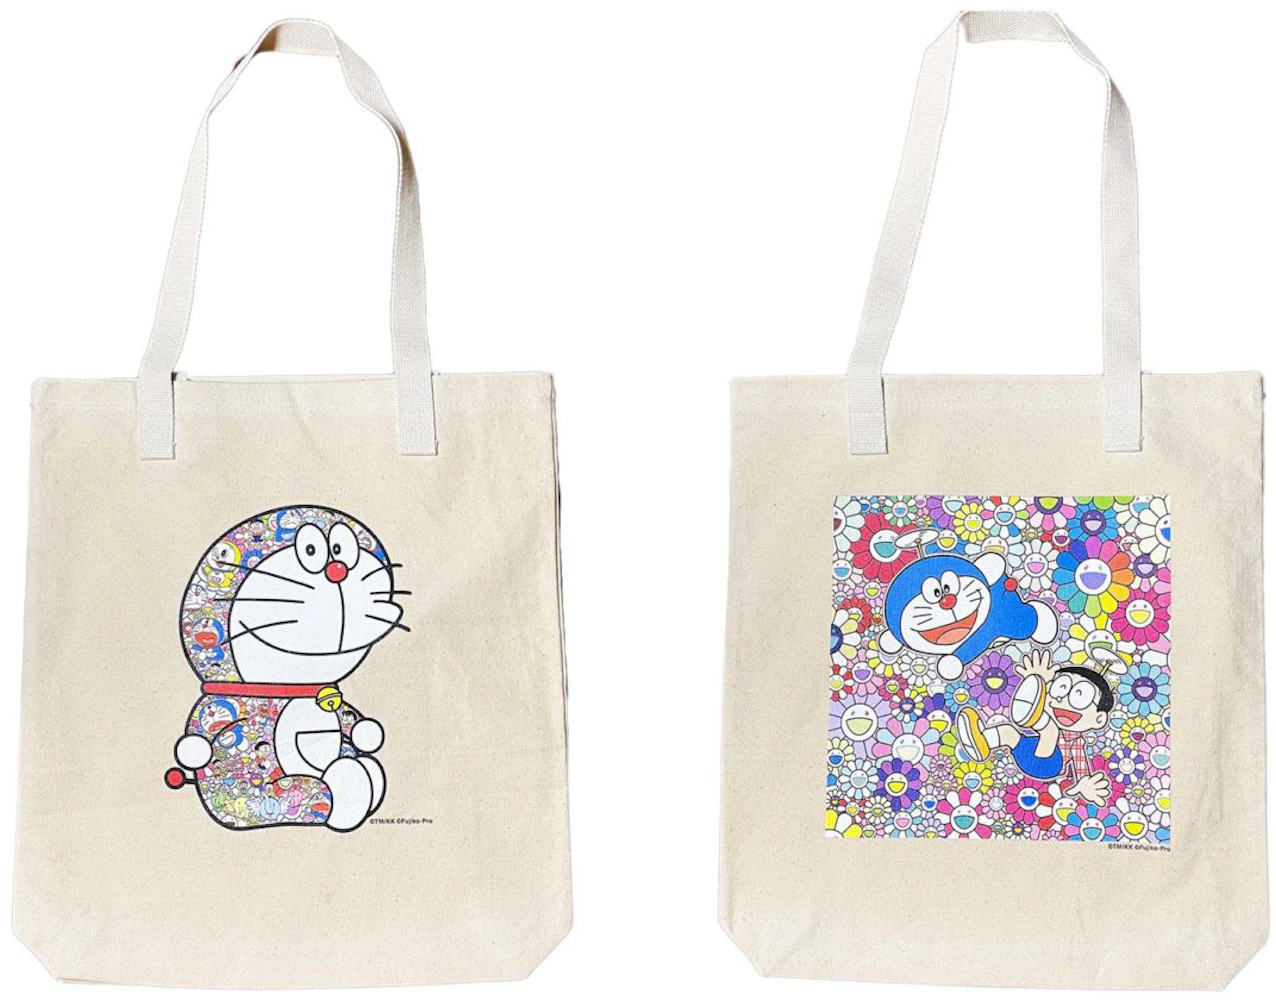 Tote Takashi Murakami Multicolour in Cotton - 33264155